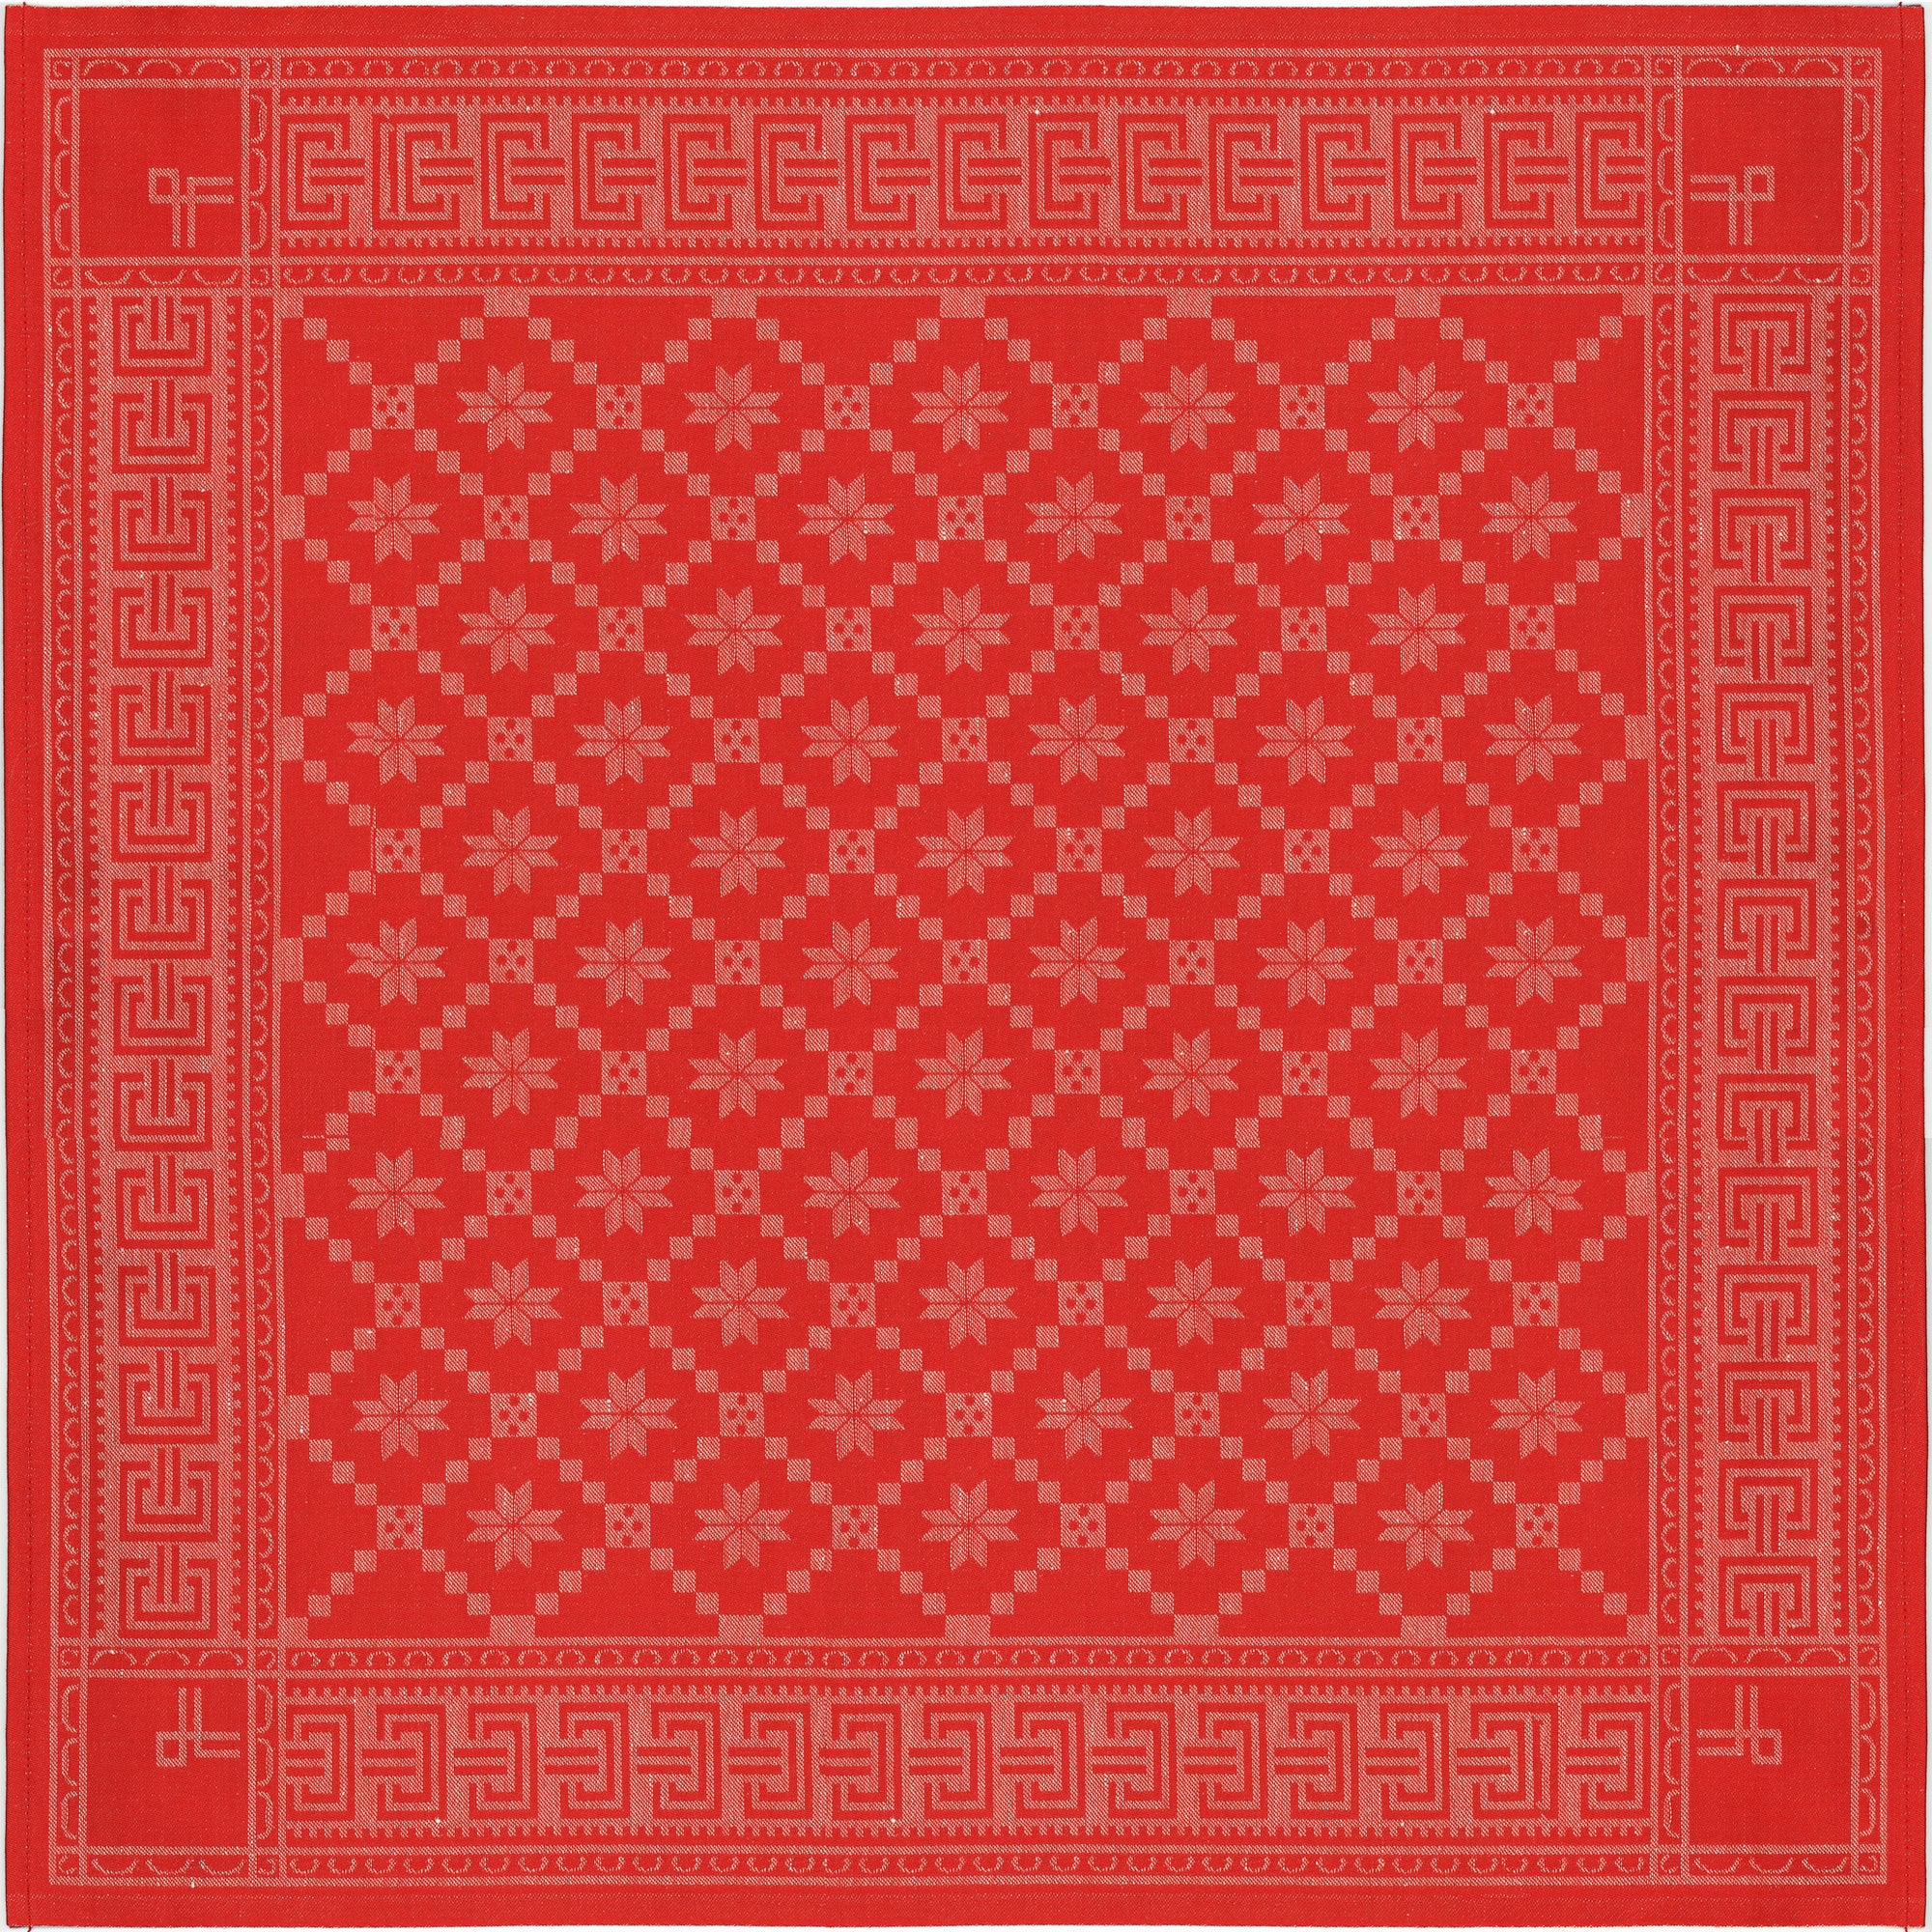 Bordsduk Åttebladrose röd 80x80 cm. Ekologisk bomull & lin